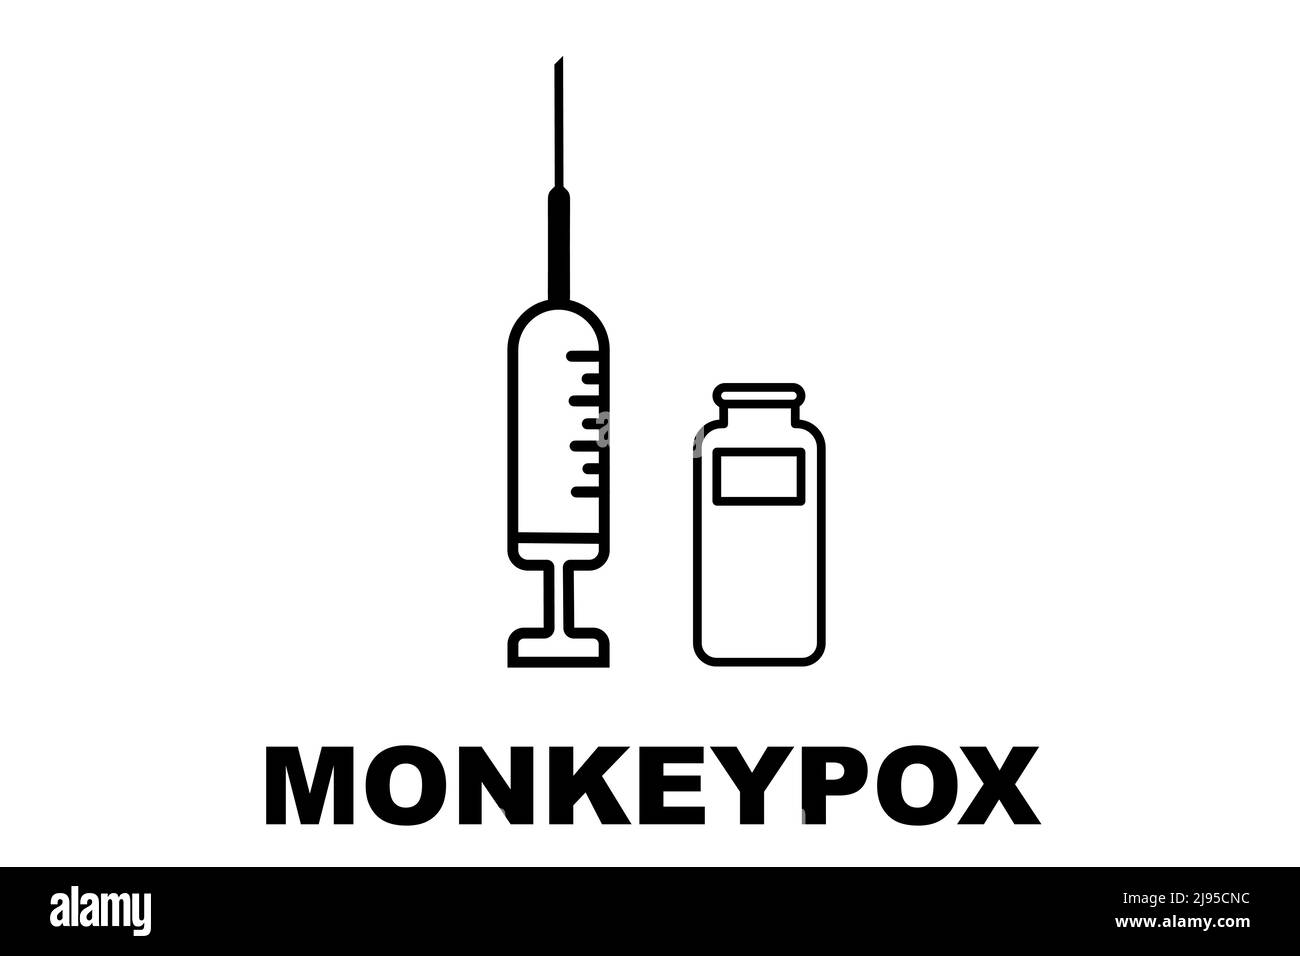 Vaccino. Monkeypox. Vaccino contro il vaiolo. Disegno di un vaccino con l'iniezione, la siringa e il flaconcino. Vaccino per la scimmietta. Disegno illustrativo. Foto Stock